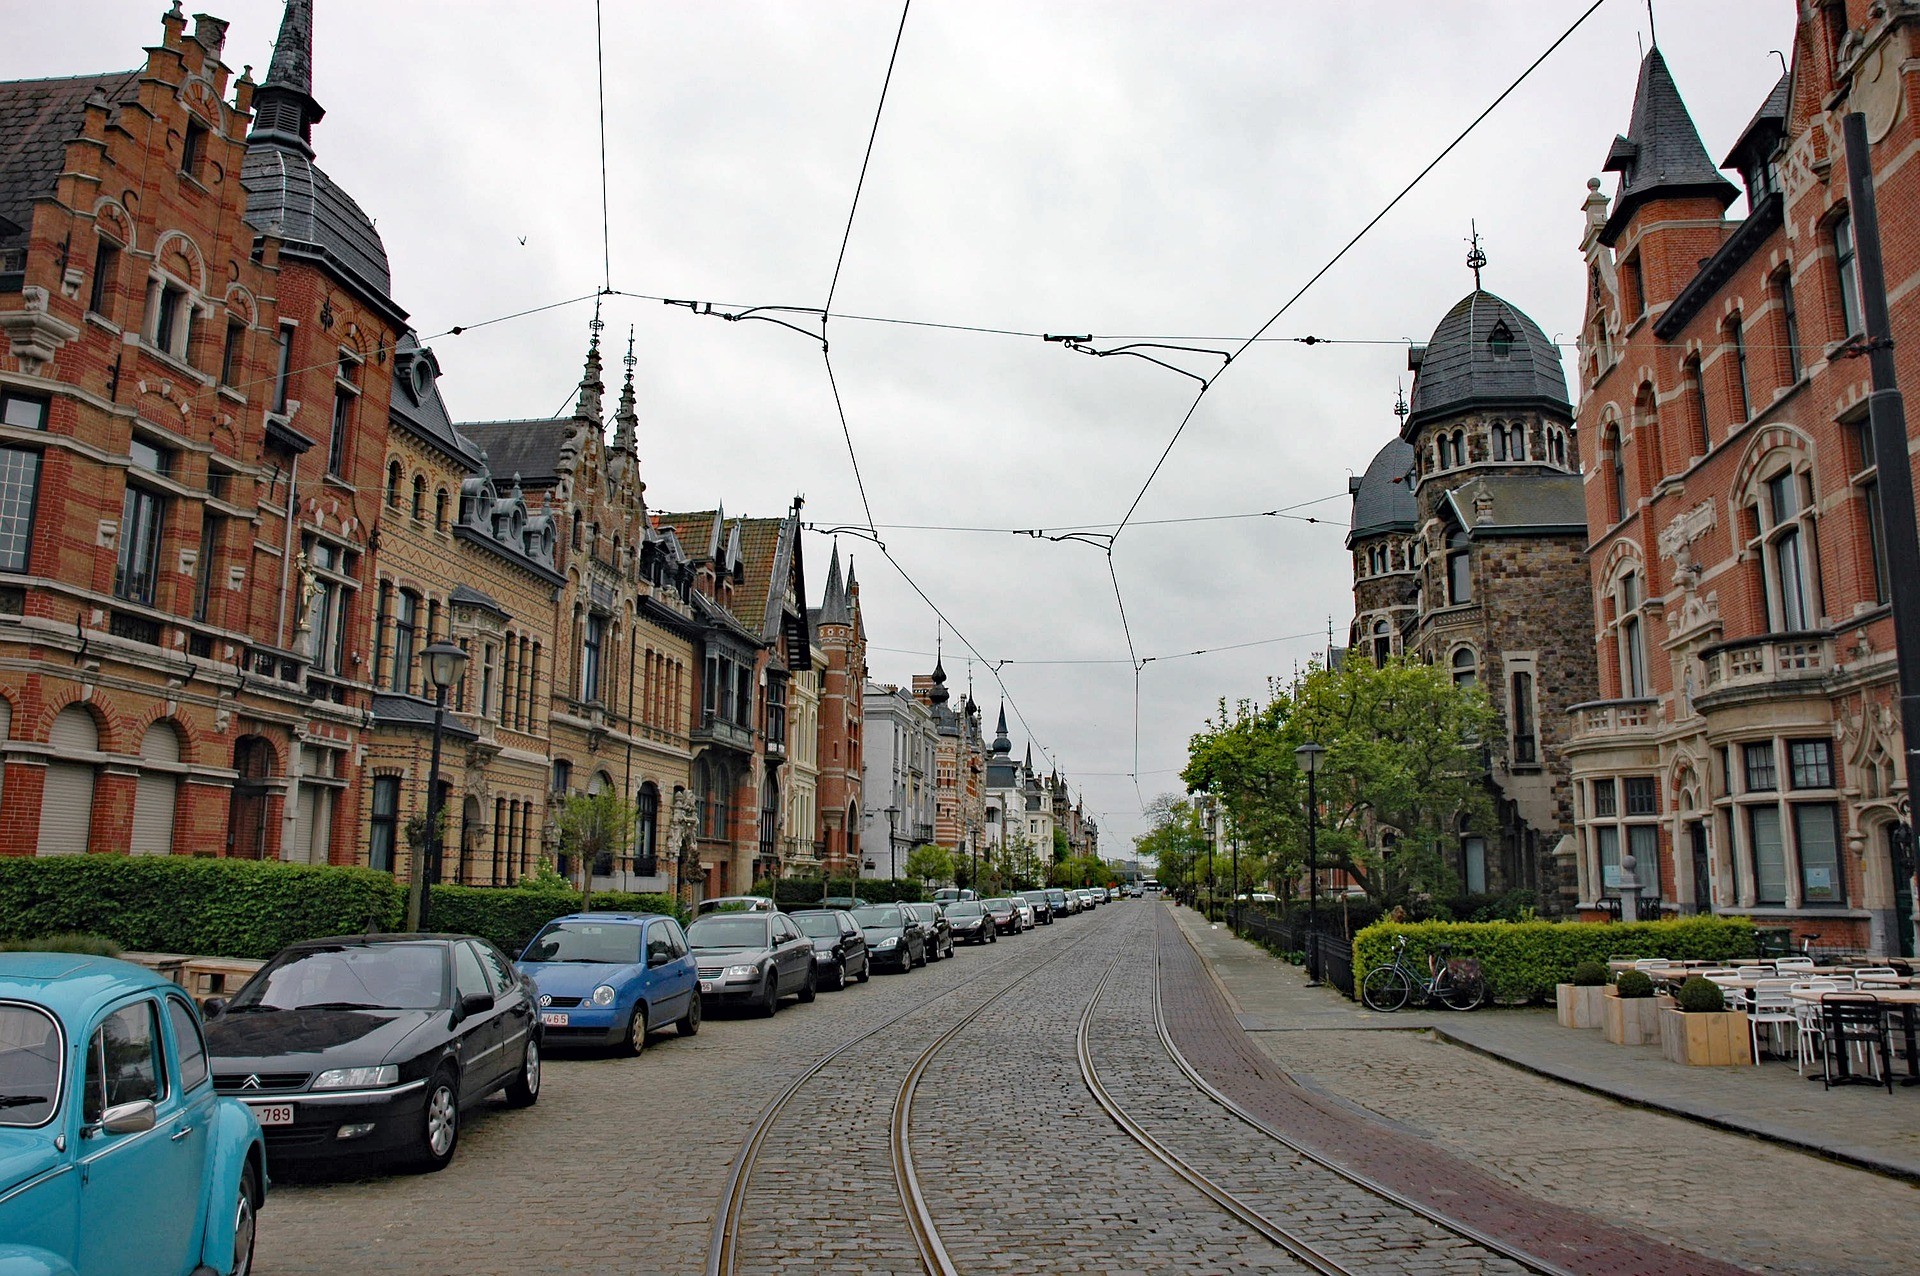 Rue à Anvers - Photo de Commander05